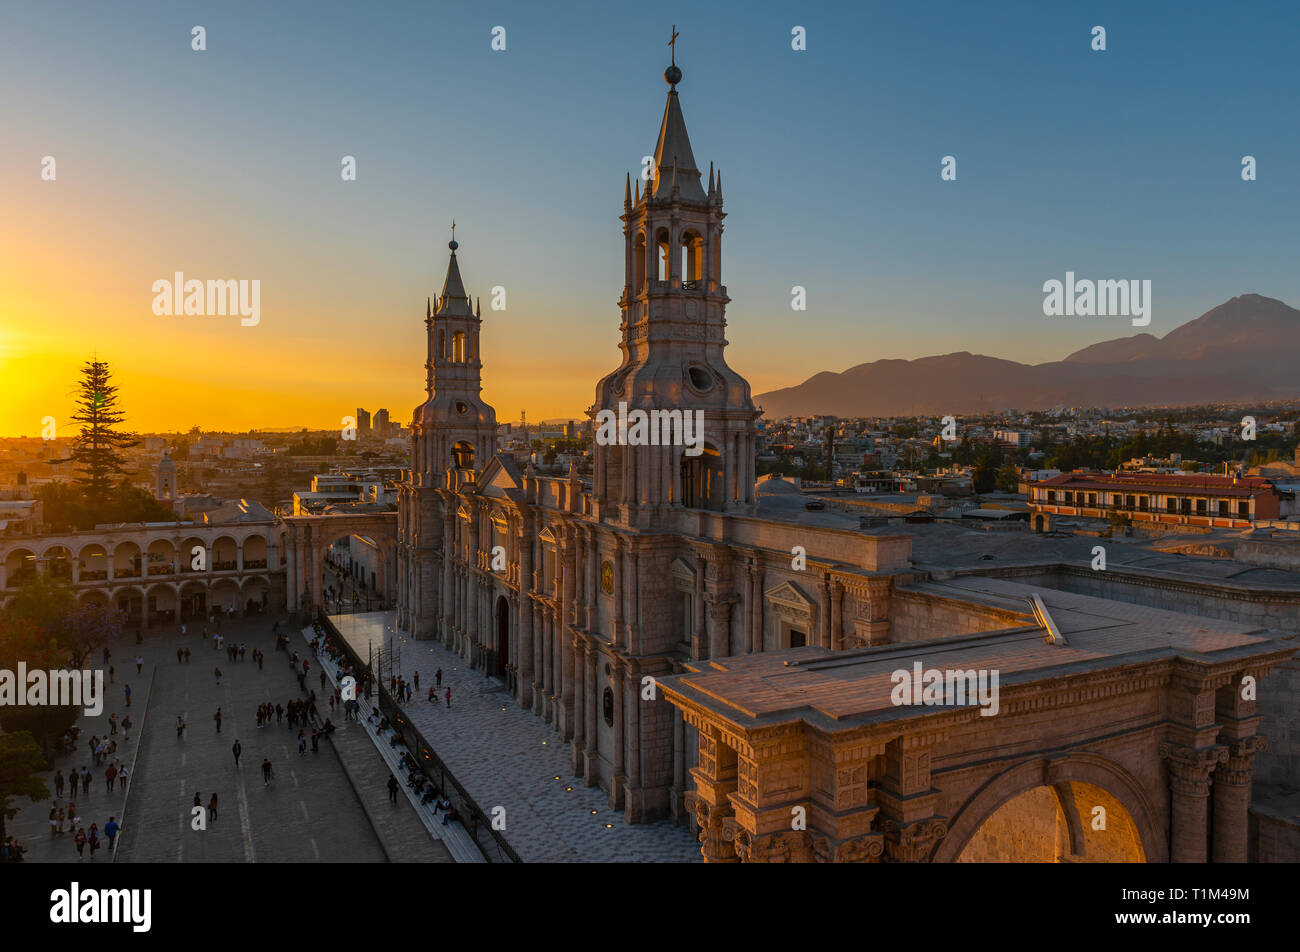 La città di Arequipa con la sua cattedrale cattolica e Plaza de Armas piazza principale nella Cordigliera delle Ande del Perù. Foto Stock